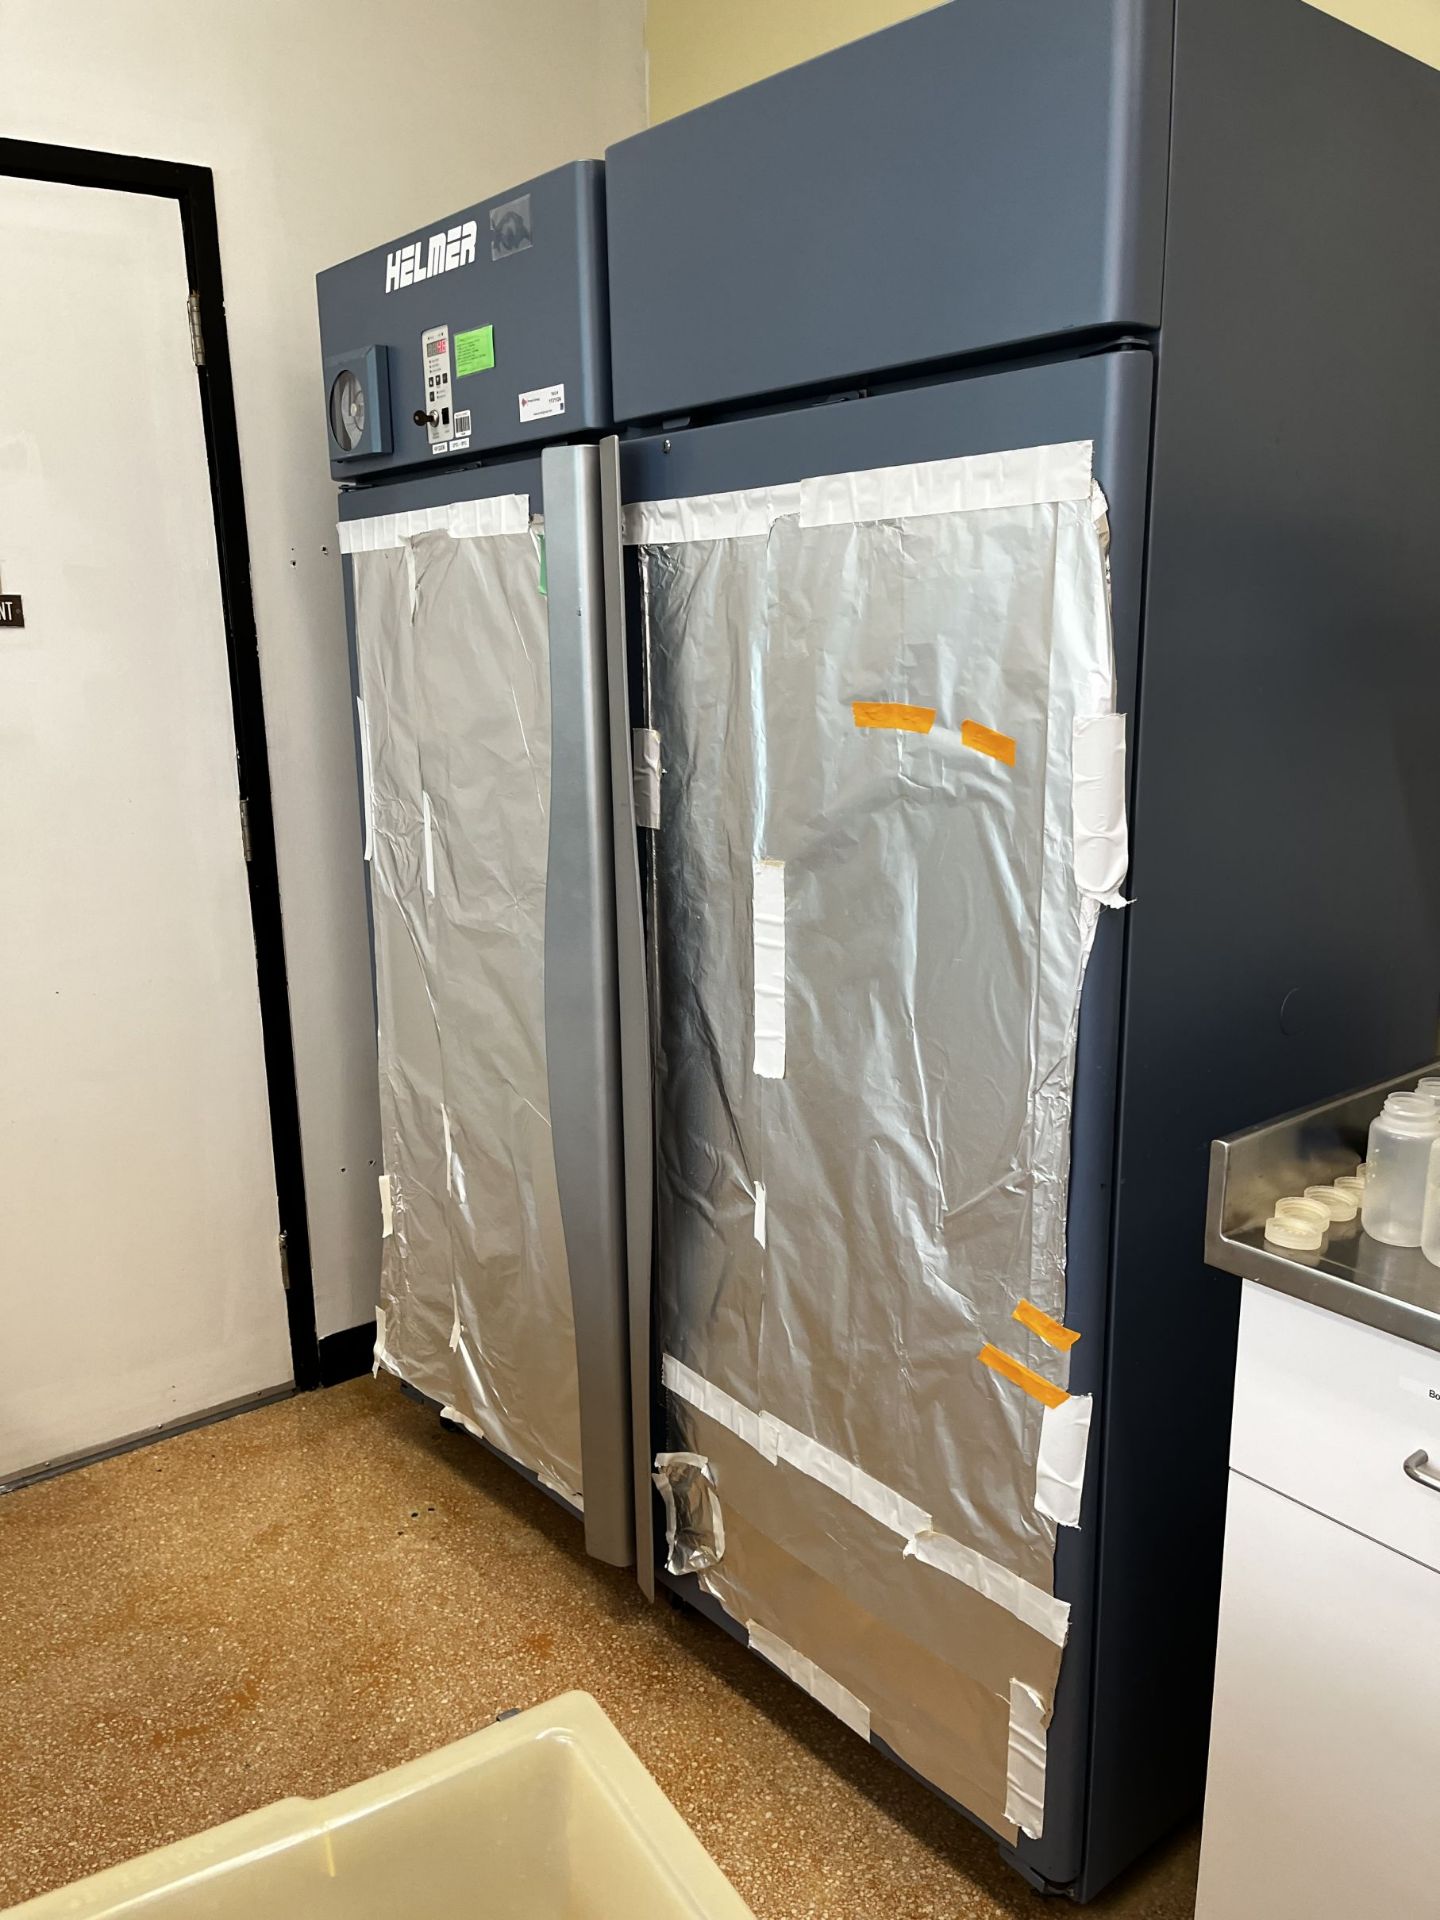 Helmer Laboratory Refrigerator - Image 2 of 5